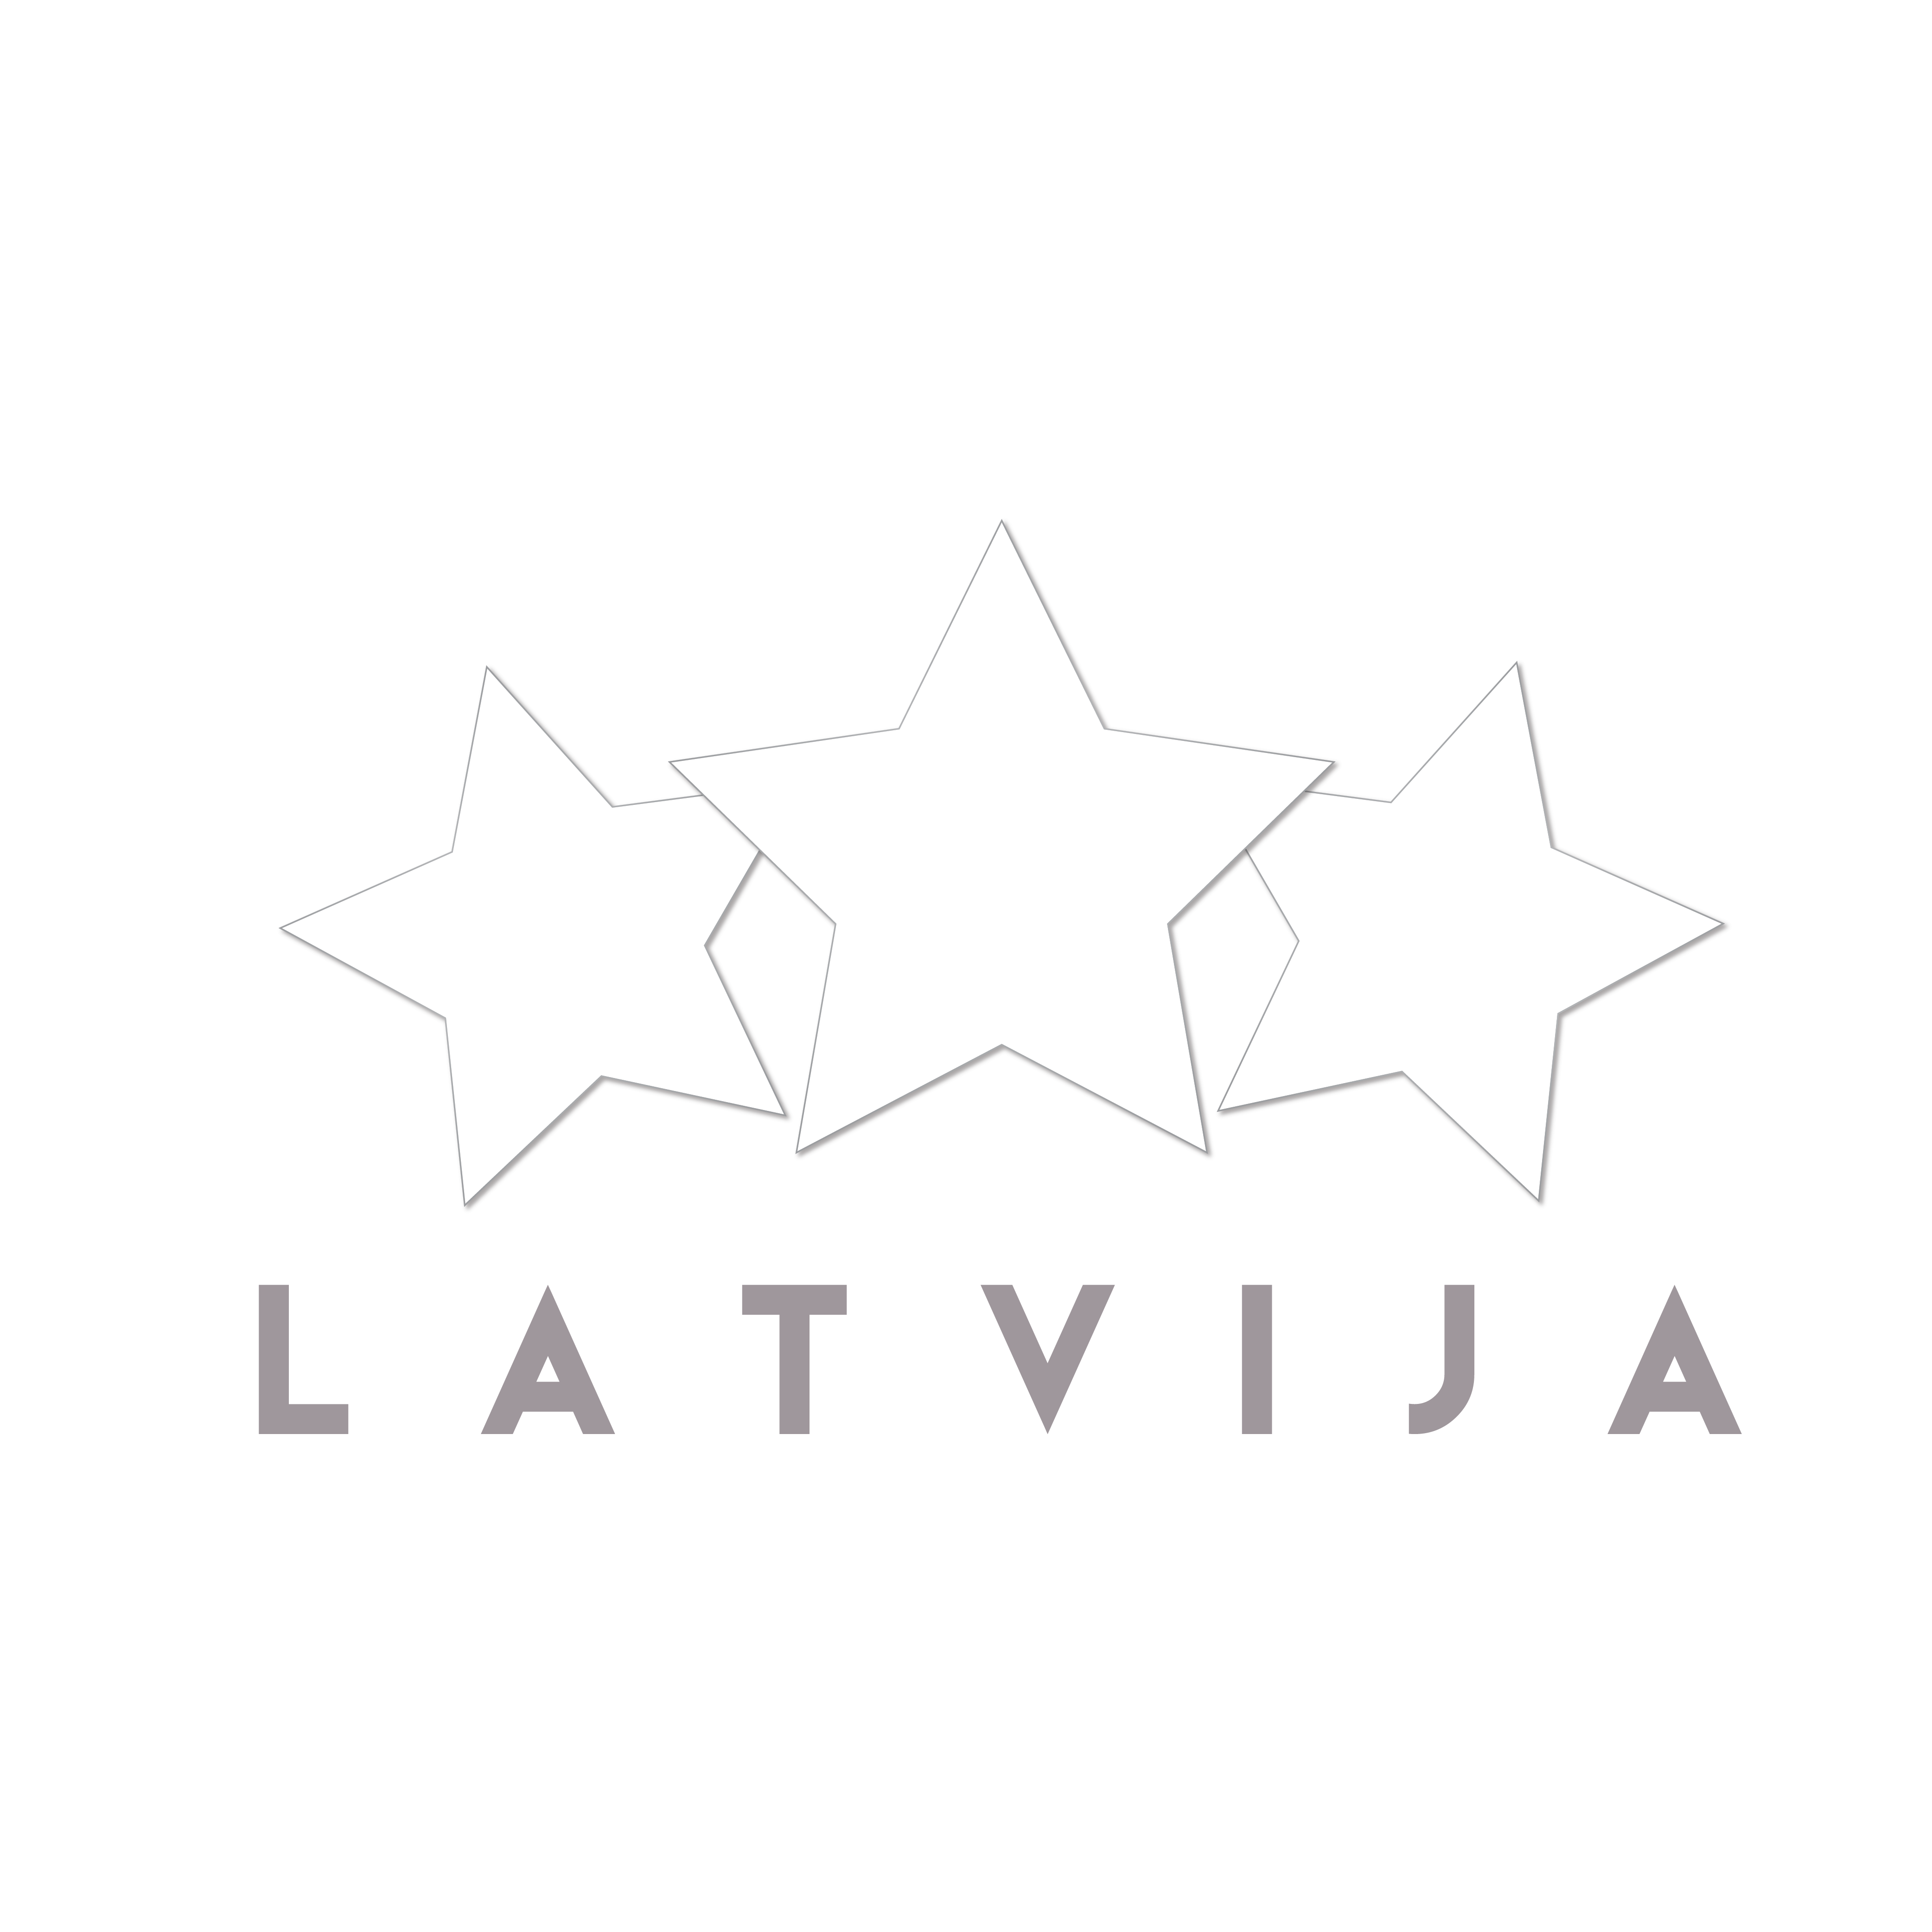 Olimpiskā kvalifikācija: Latvija pirmajā grozā pirms 27. novembrī paredzētās grupu izlozes